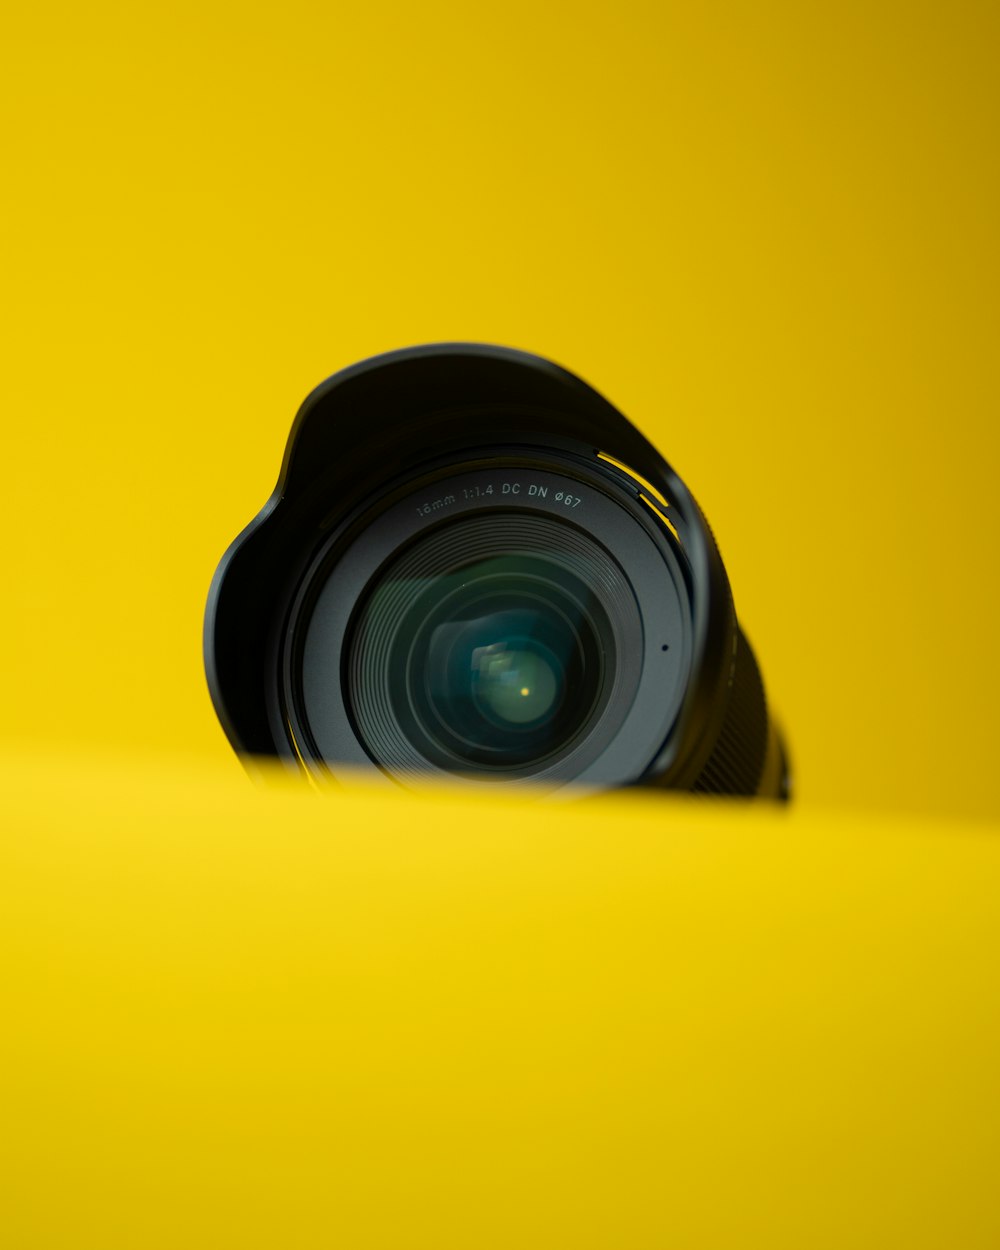 노란색 표면 위에 놓인 카메라 렌즈